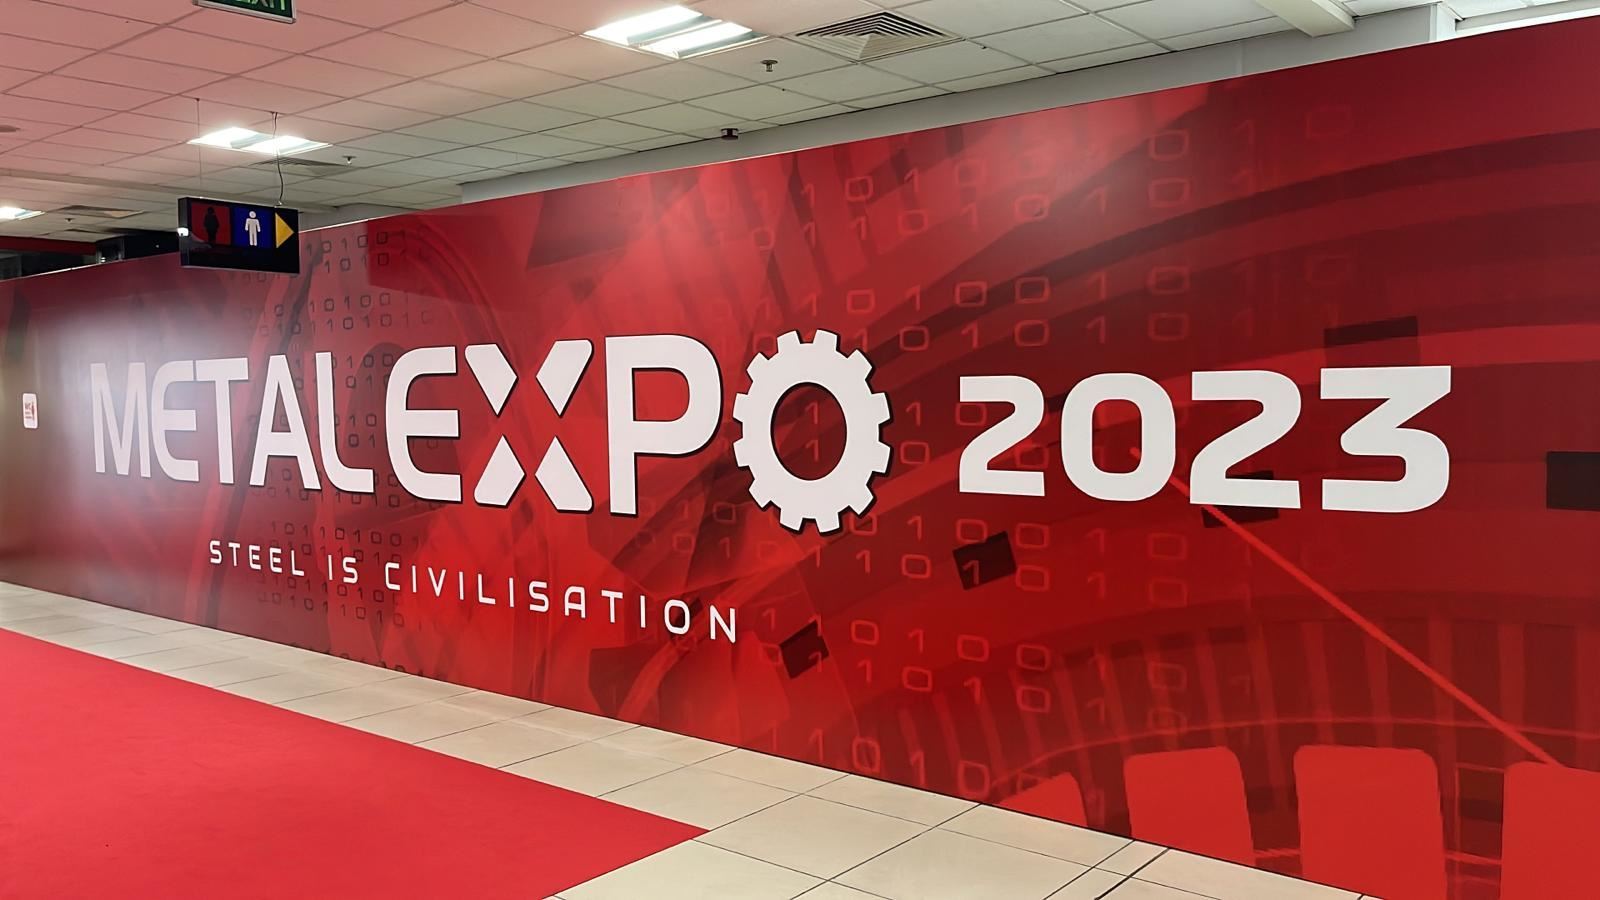 Metalexpo Eurasia 2023 starts today